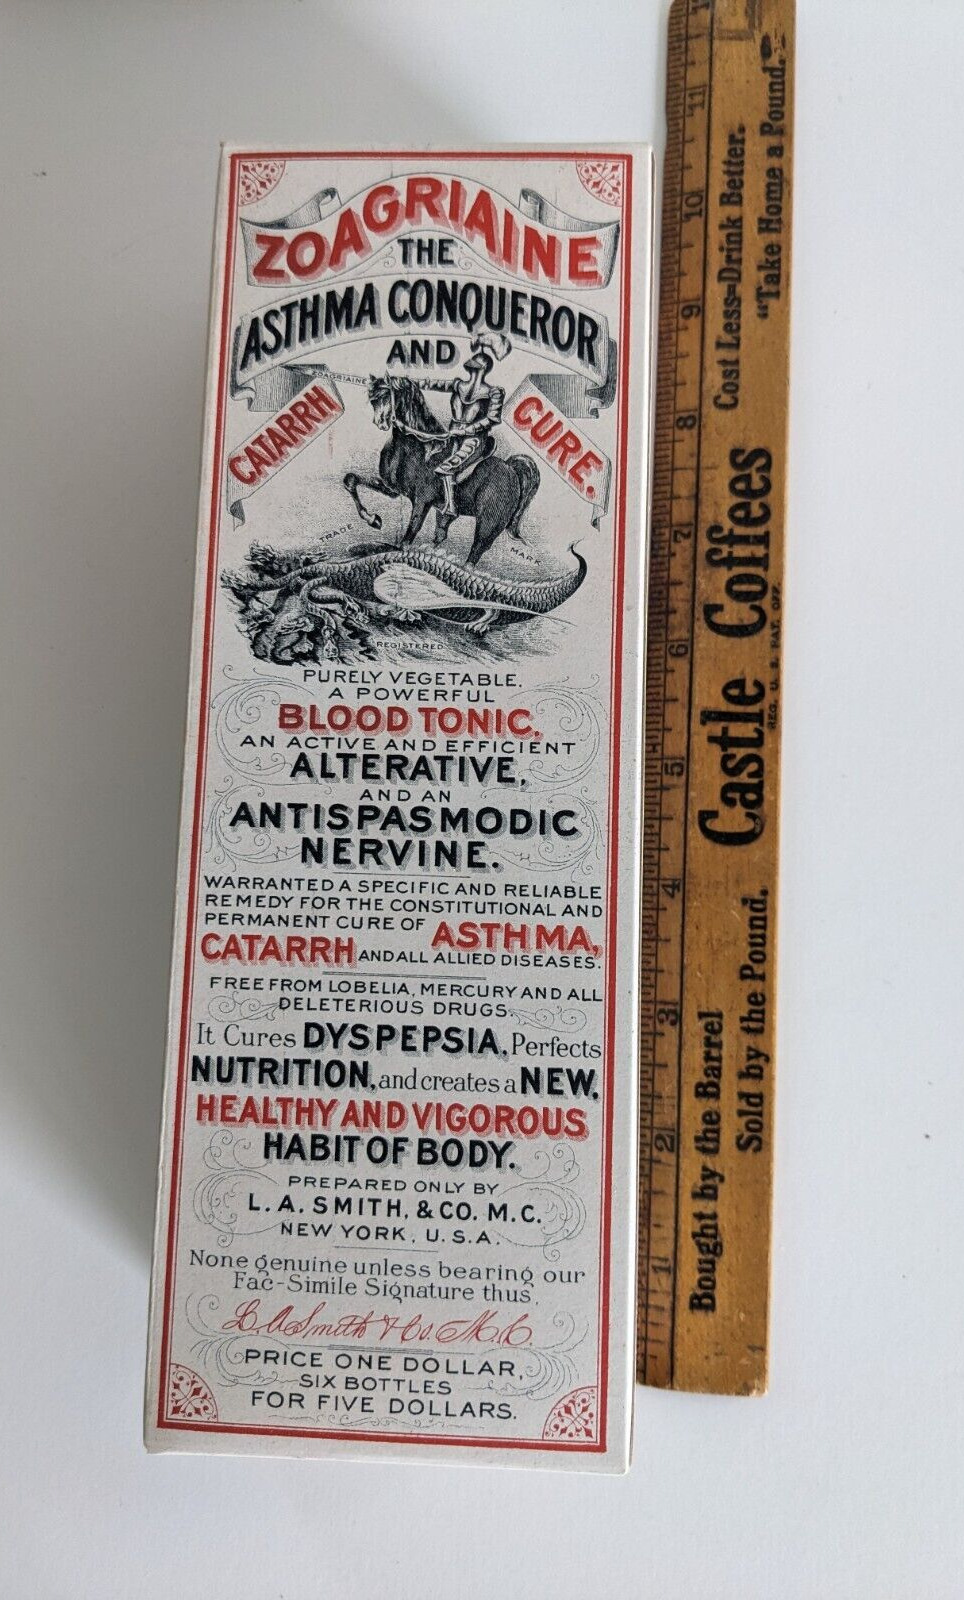 ZOAGRAINE Asthma Conqueror Catarrh Cure Cardboard Box Empty Quack Medicine